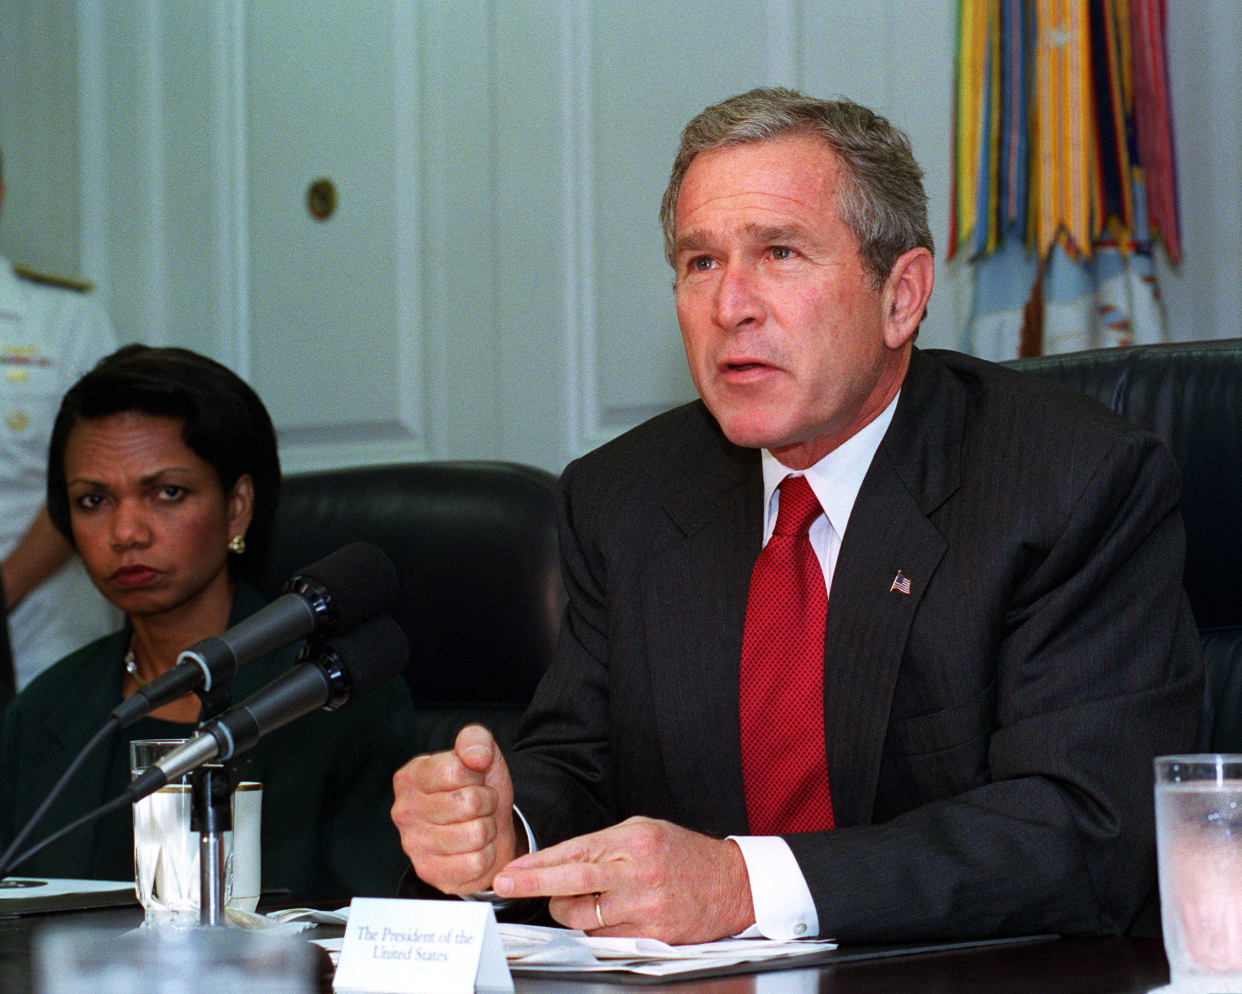 President Bush addressing the media at the Pentagon, September 17, 2001